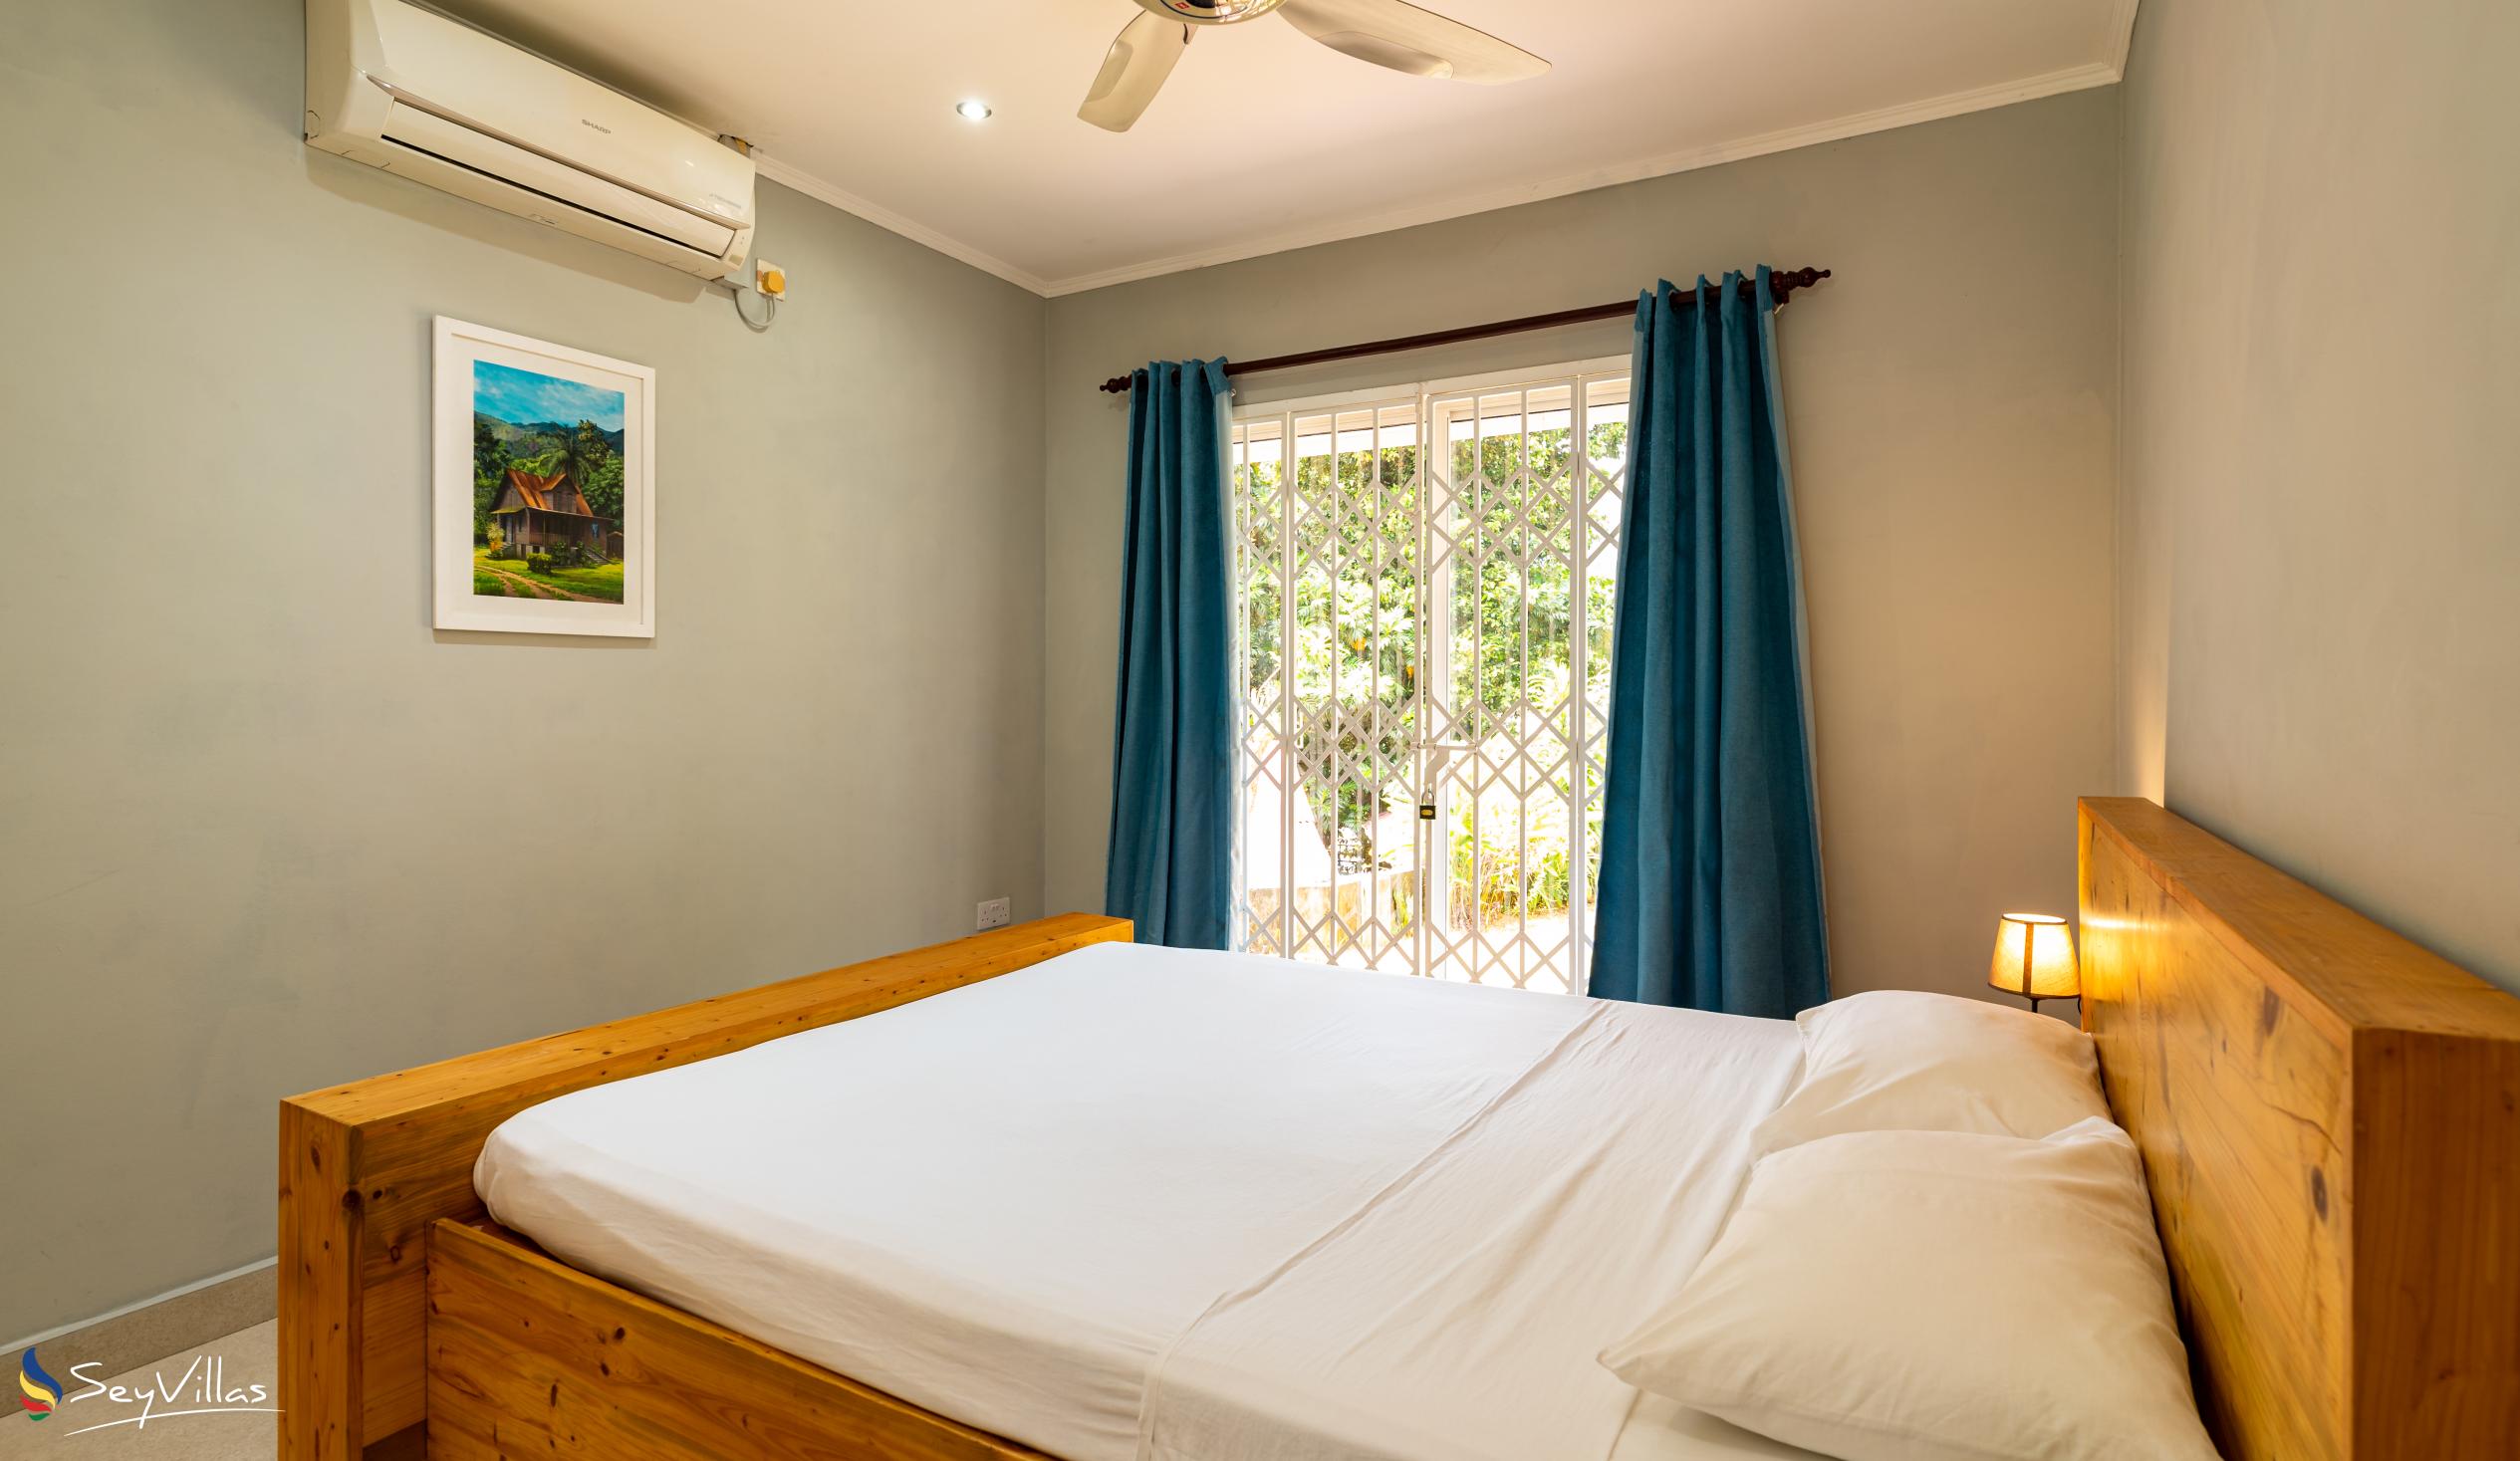 Foto 46: Riverside Residence - Appartement 2 chambres (rez-de-chaussée) - Mahé (Seychelles)